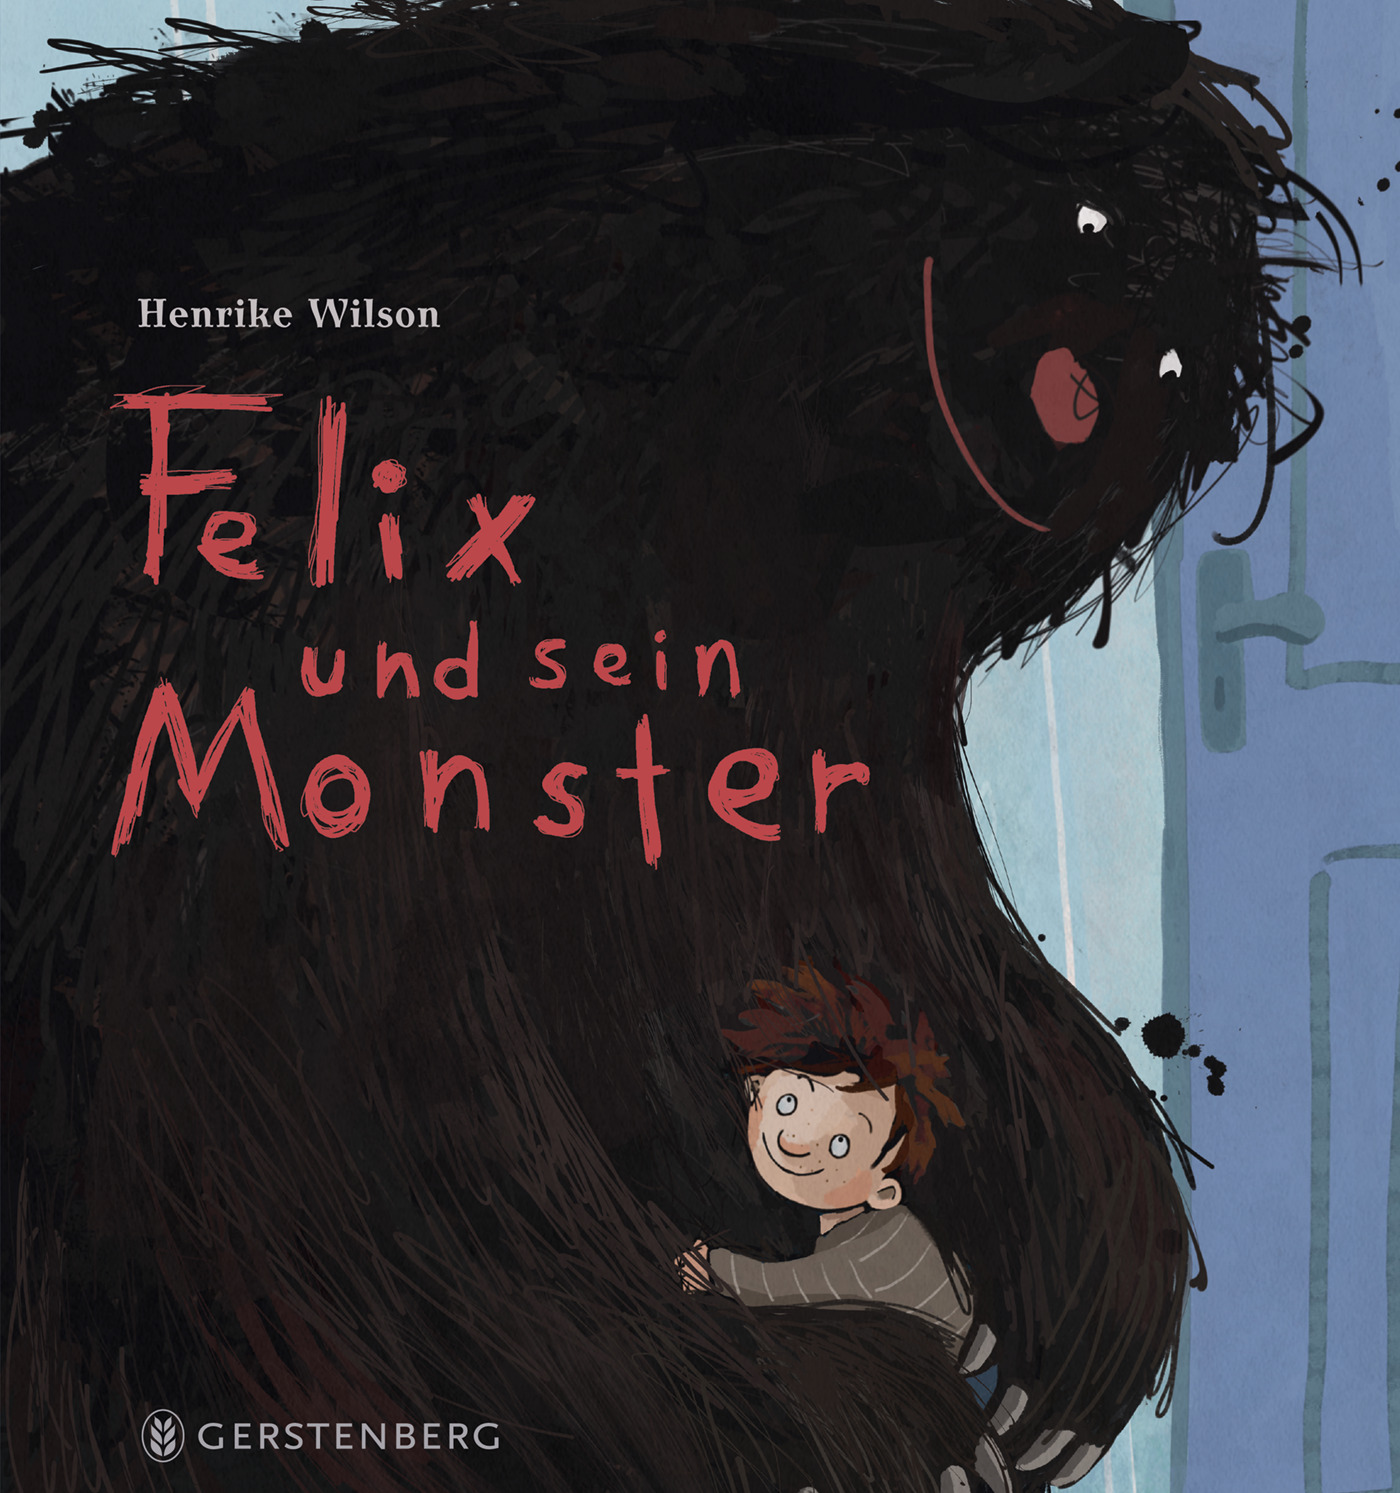 Buchcover "Felix und sein Monster", Gerstenberg 